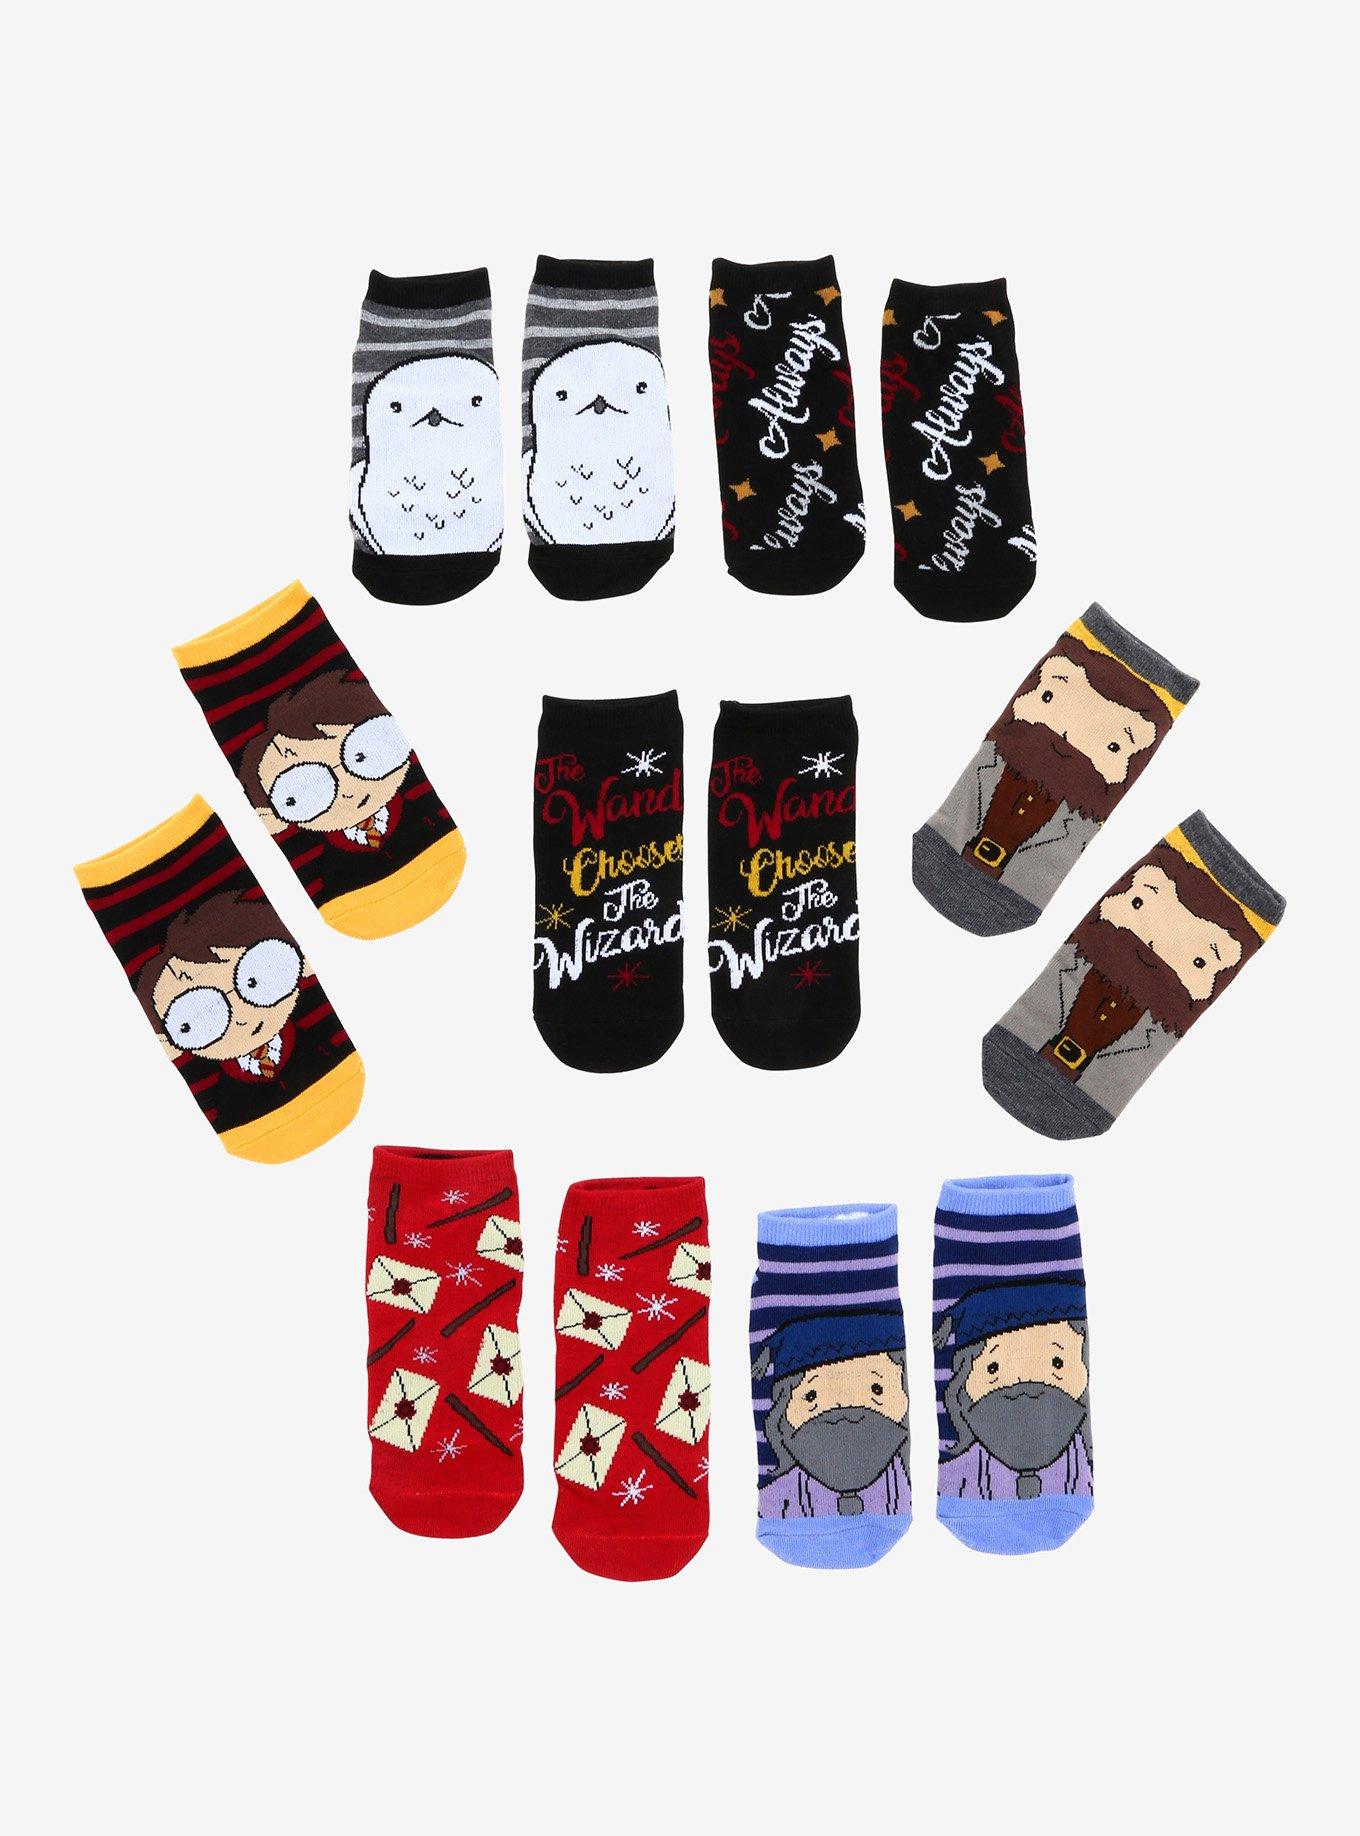 Harry Potter 7 Days Of Socks Gift Set, , hi-res